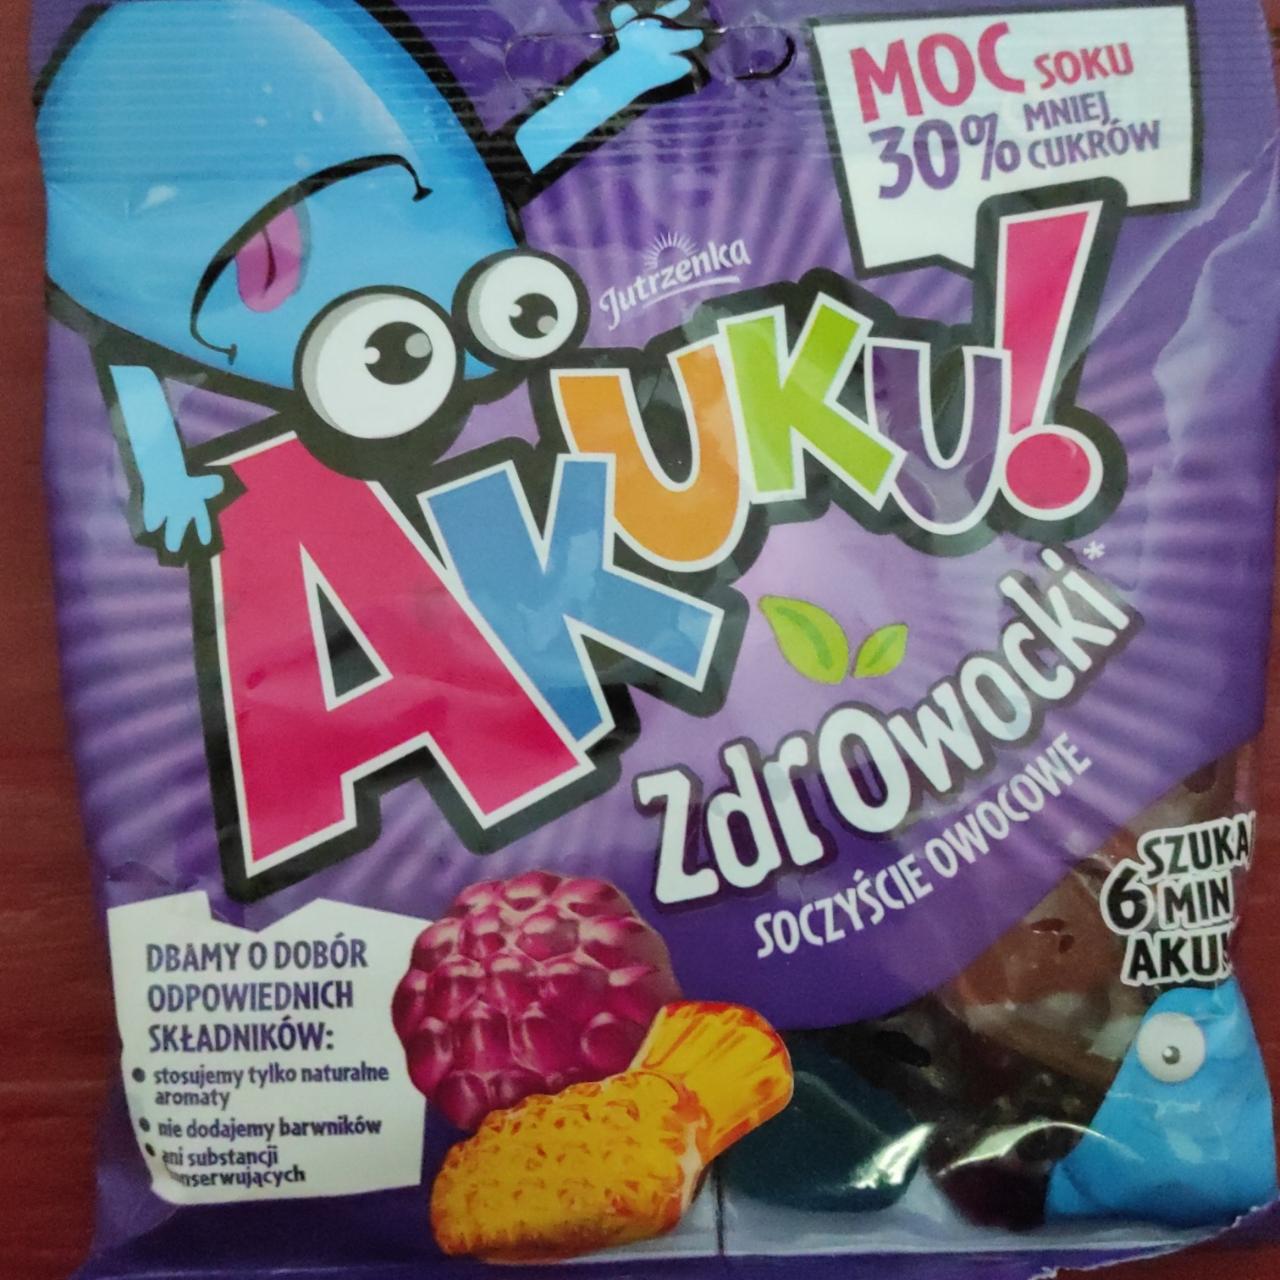 Фото - Жевательные конфеты с соком Zdrowocki Akuku!